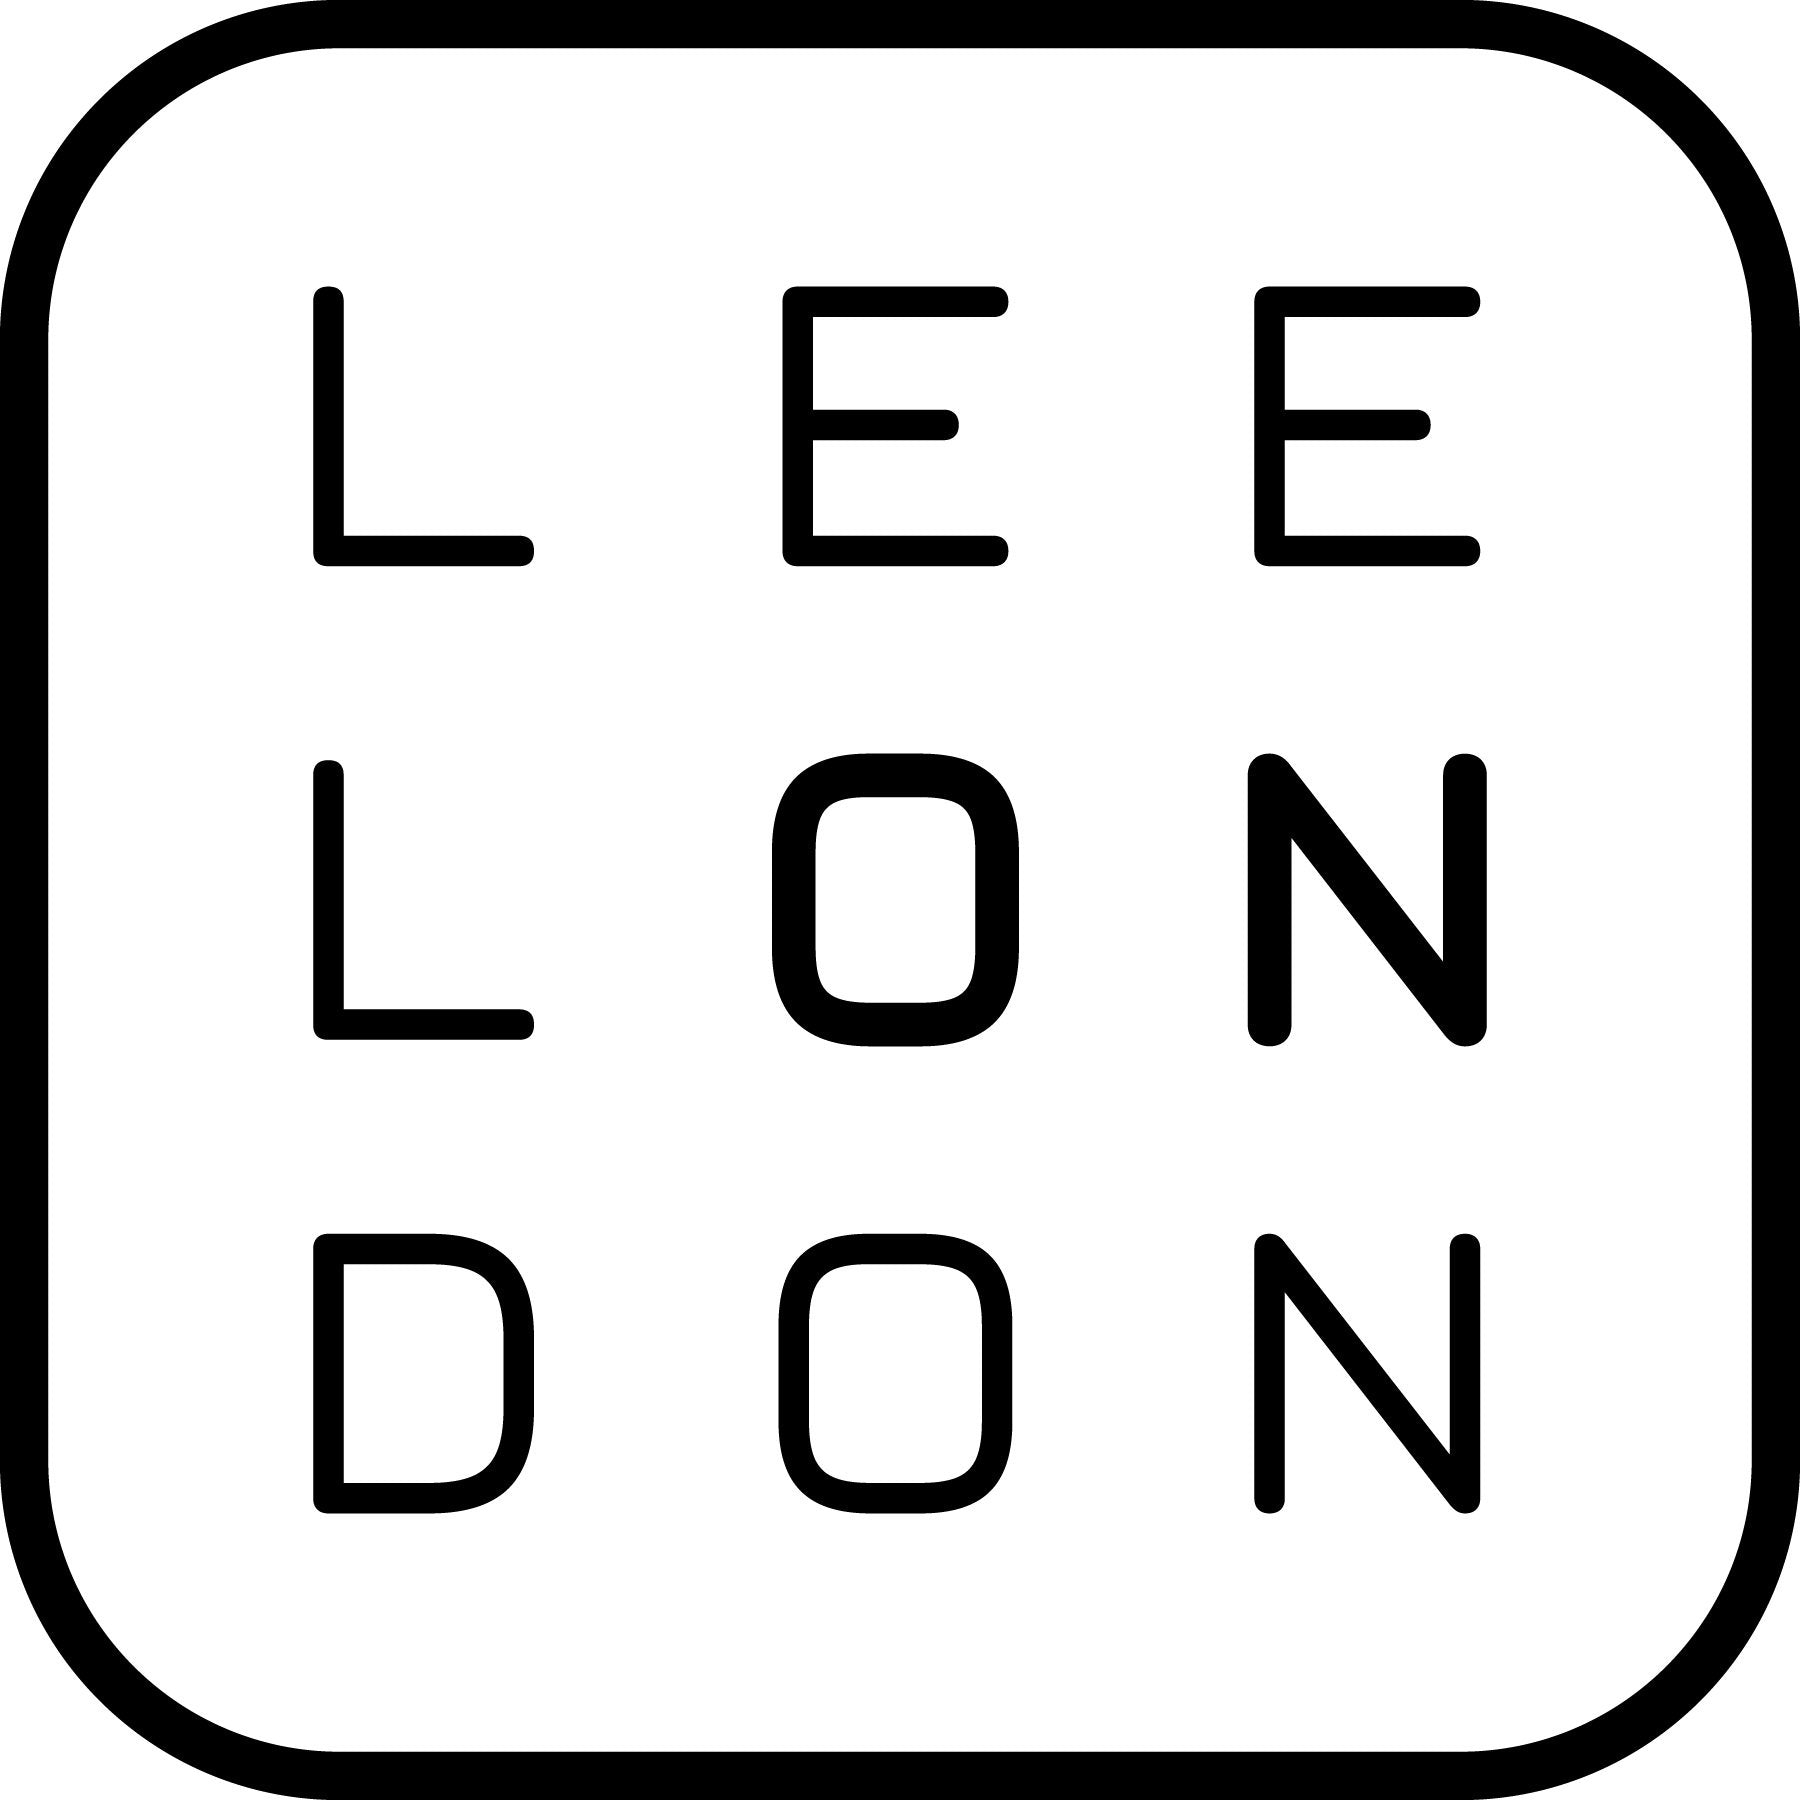 Lee London – Lee London Co.